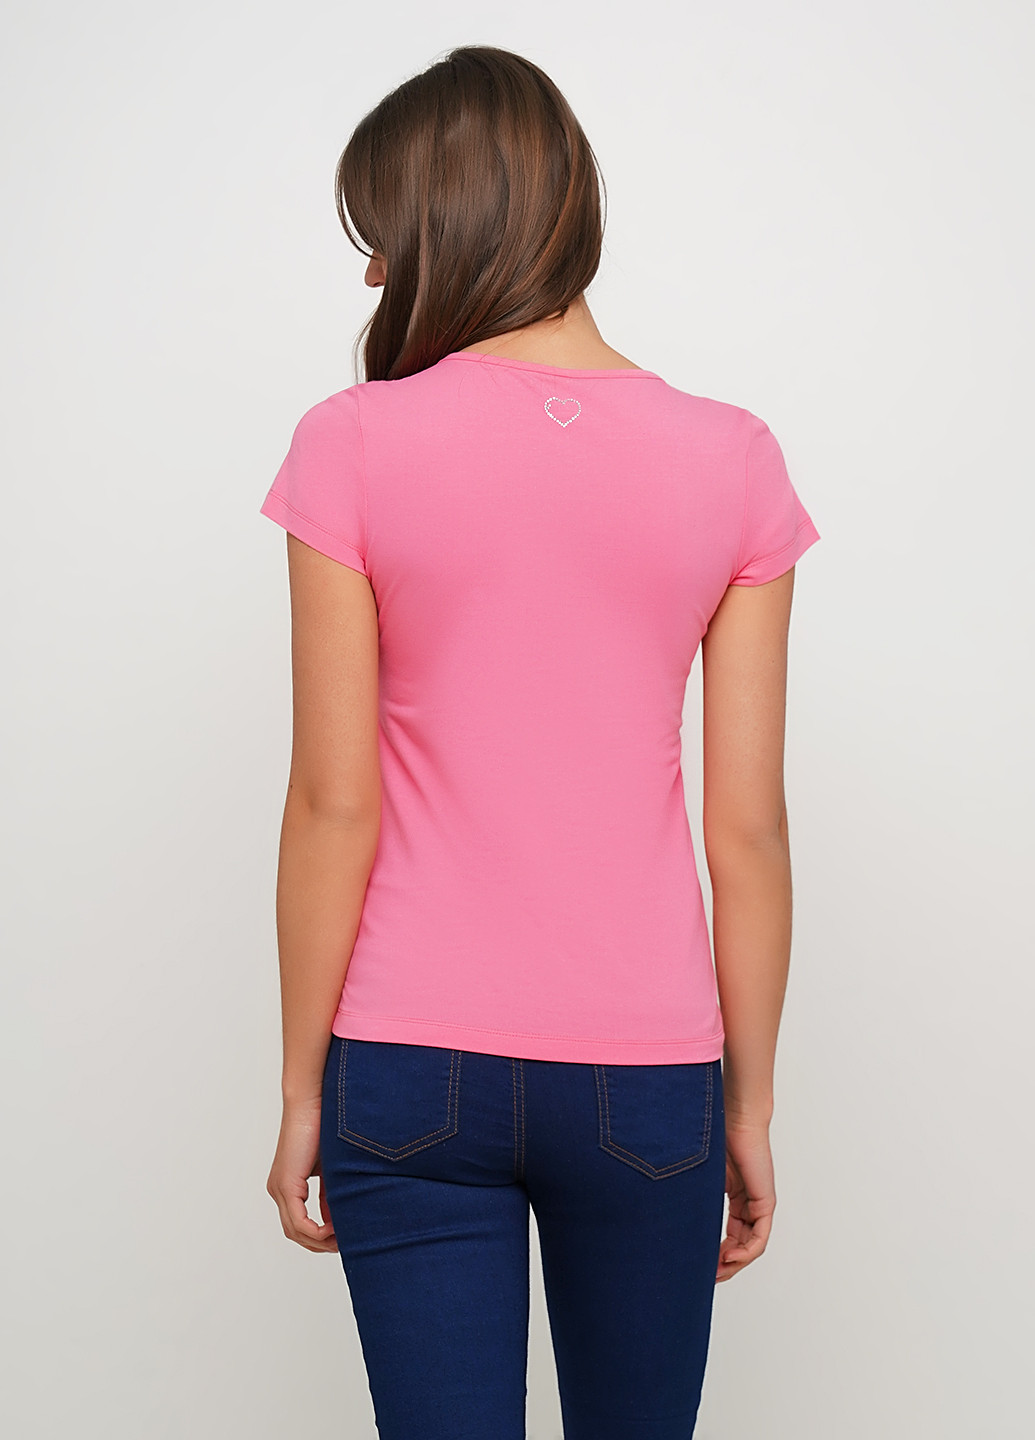 Розовая летняя футболка Vidoli